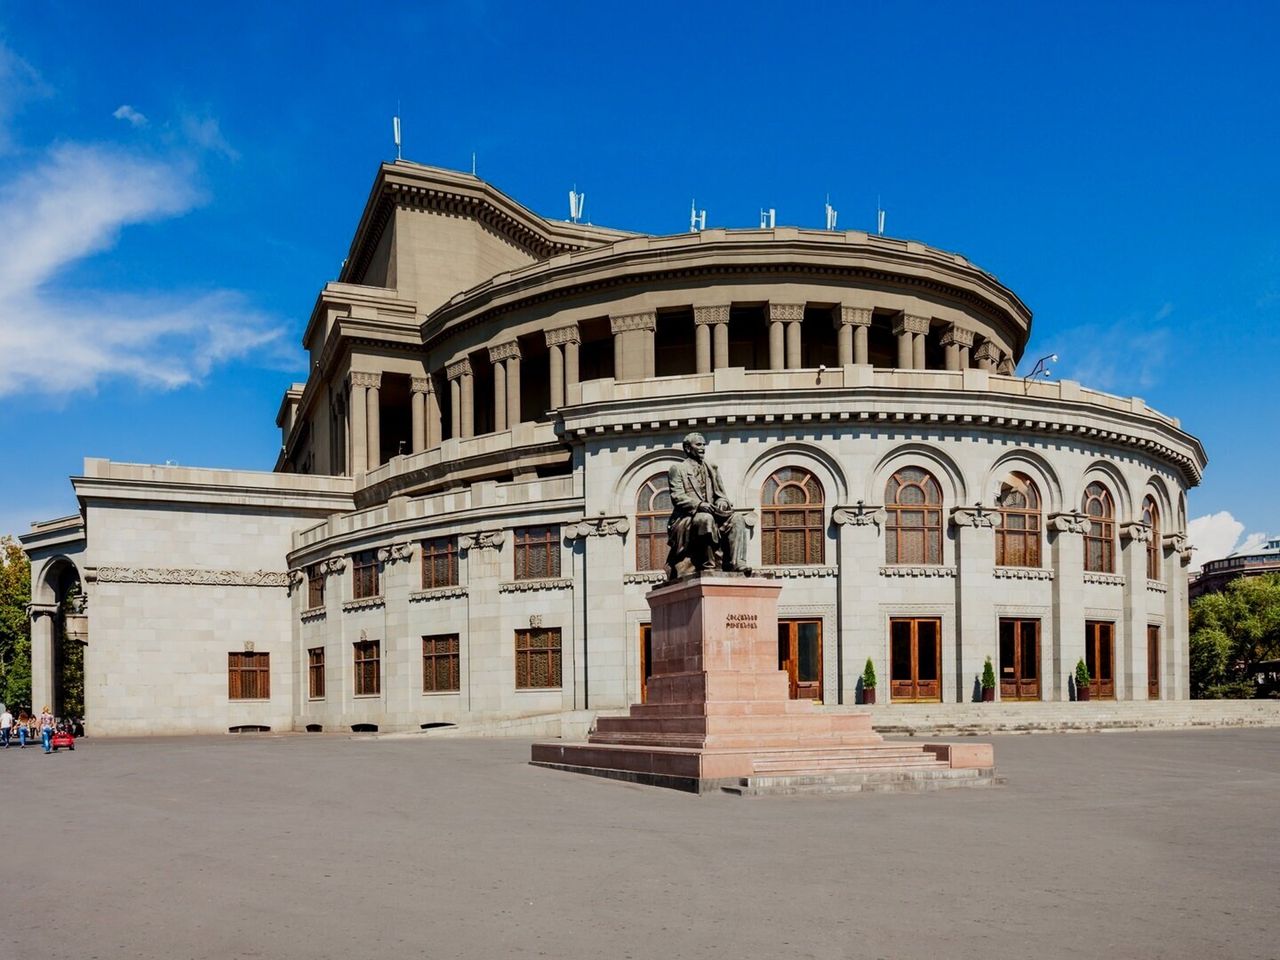 Пеший обзорный тур по Еревану | Цена 65€, отзывы, описание экскурсии